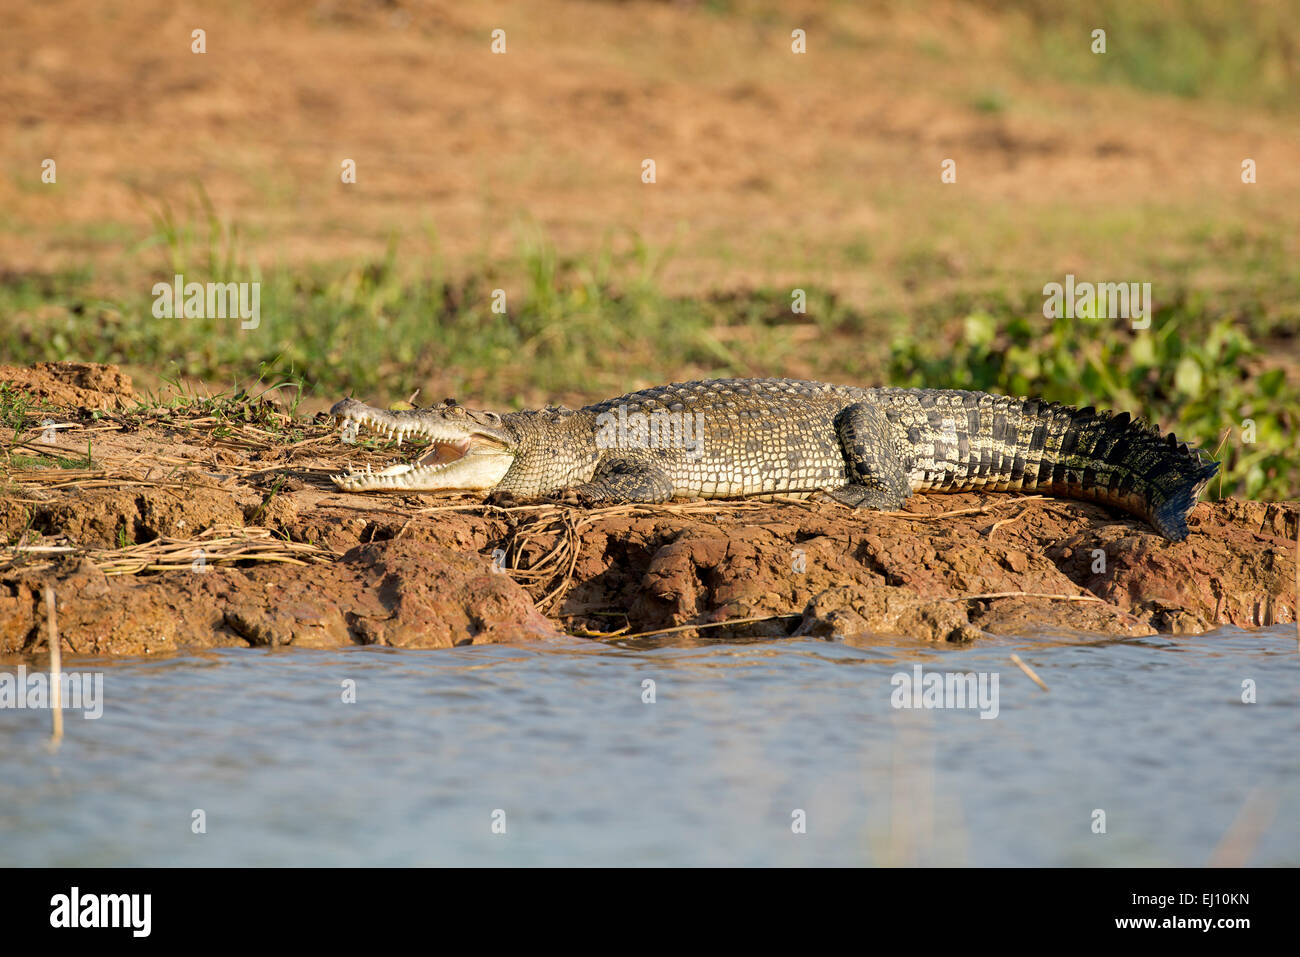 Cocodrilos siameses, Tailandia, cocodrilos, reptiles, Crocodylus siamensis Foto de stock